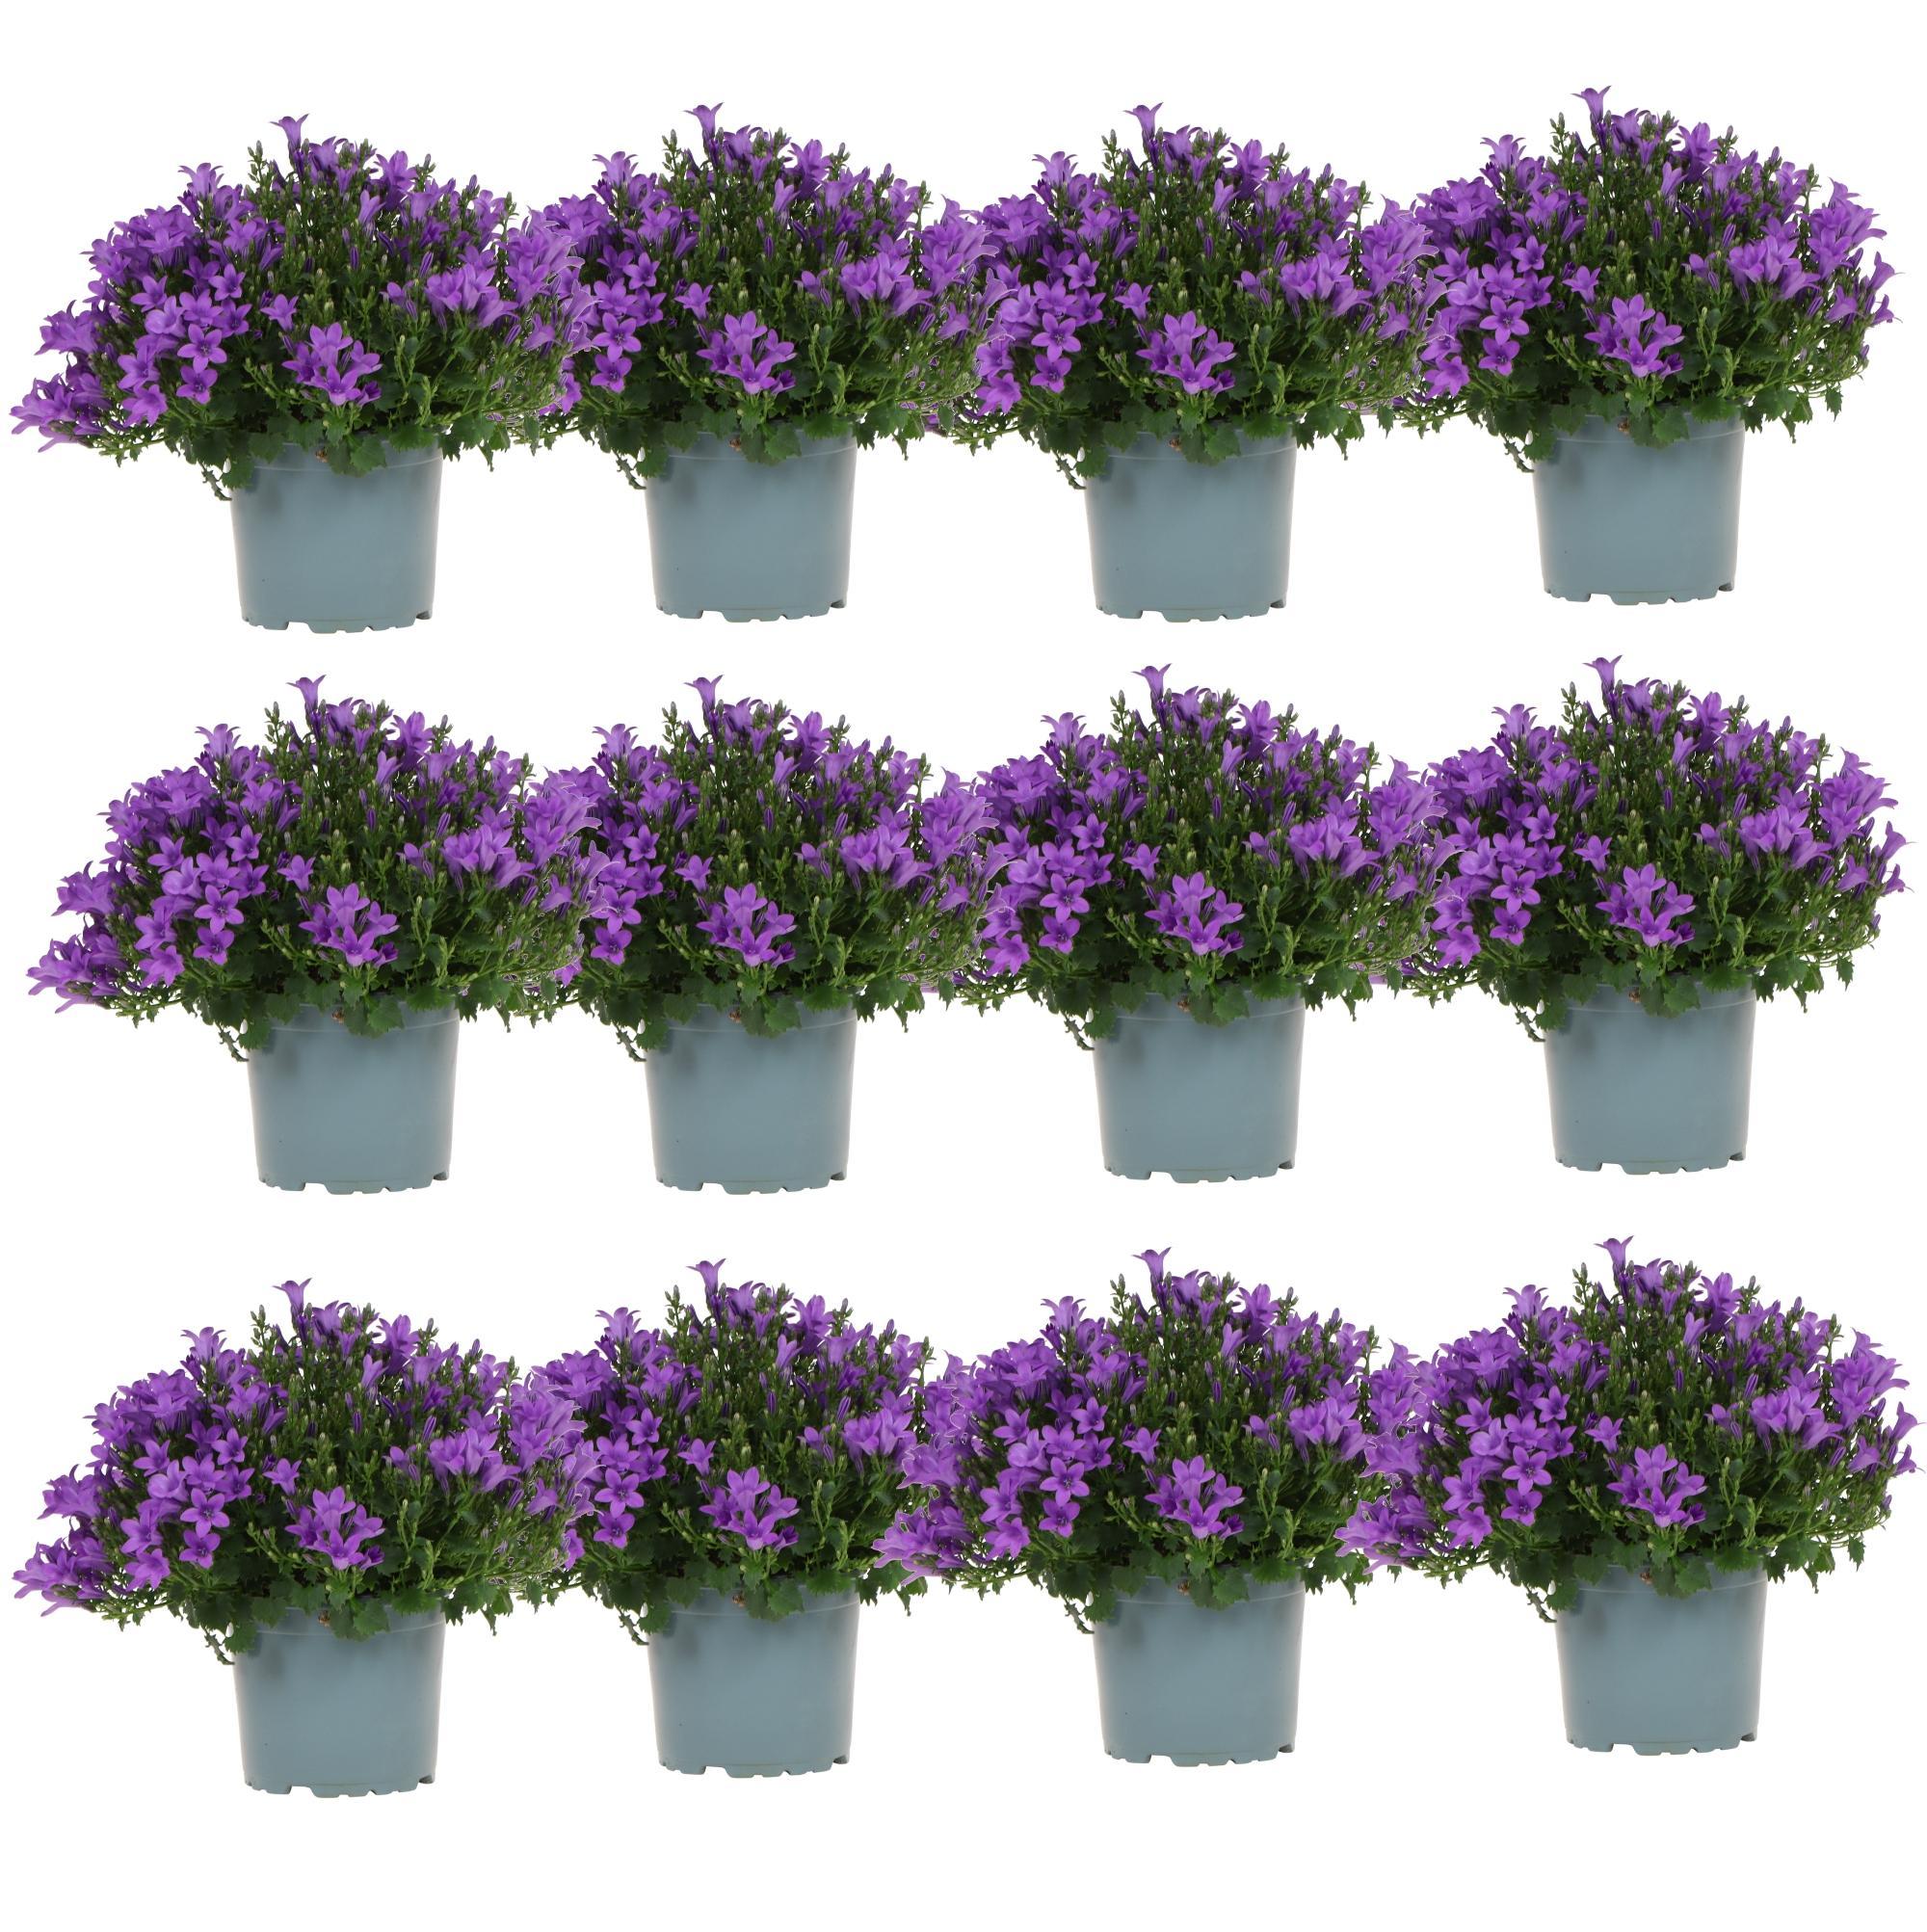 Everspring Campanula addenda - klokjesbloem purple potmaat 12cm - vaste plant - winterhard campanula addenda - klokjesbloem paars potmaat 12cm - 2m2 bodembedekker - 12 stuks - ambella purple - tuinplanten - wint